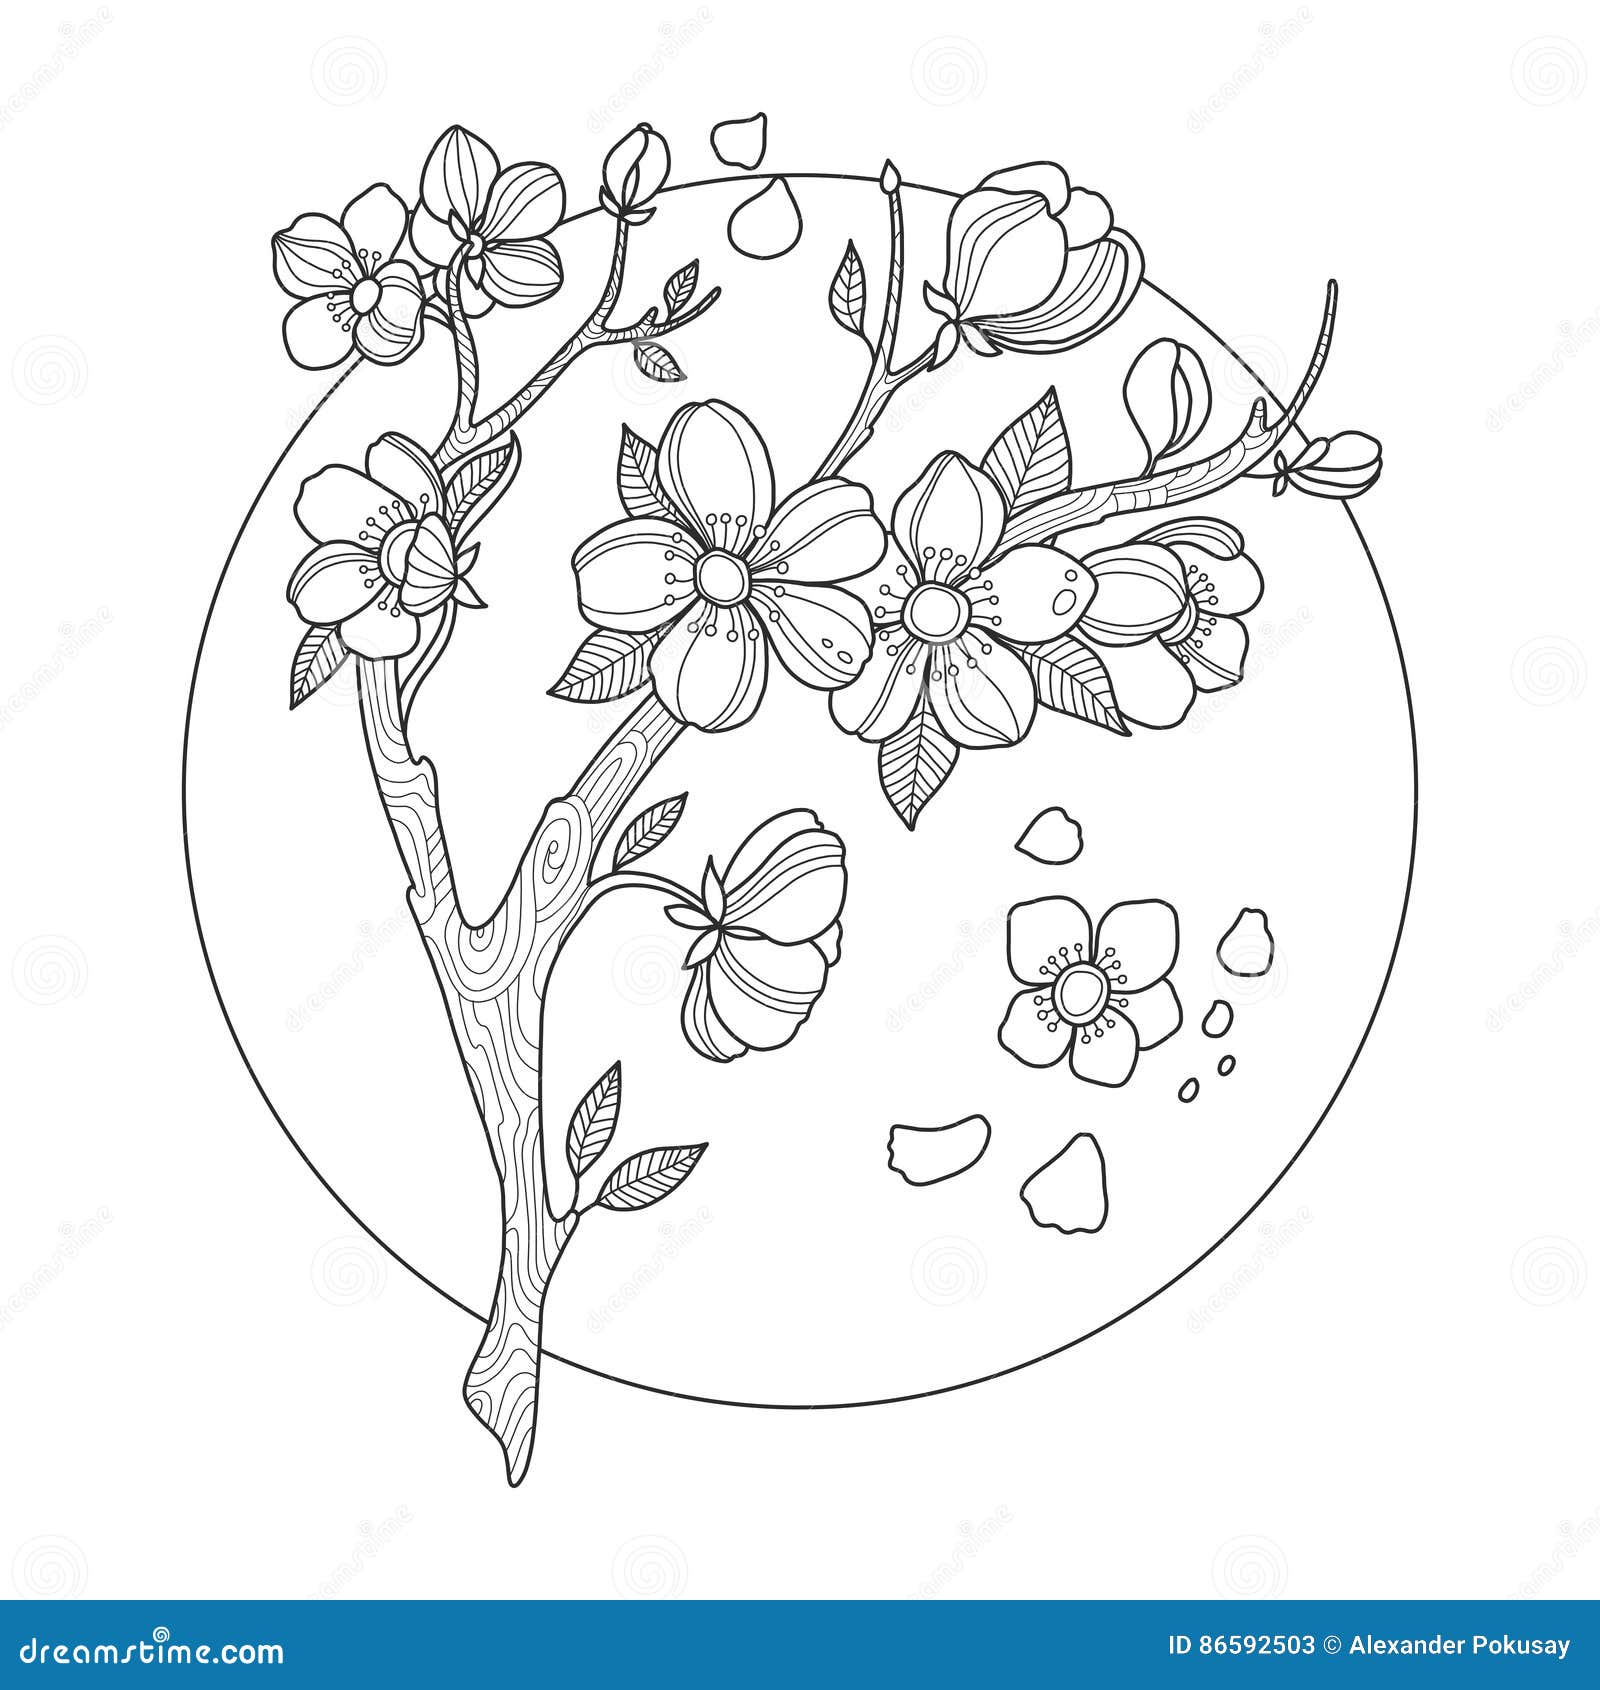 Vectoriel De Sakura De Fleurs De Cerisier Japonais Illustration de Vecteur  - Illustration du oriental, brun: 272681963